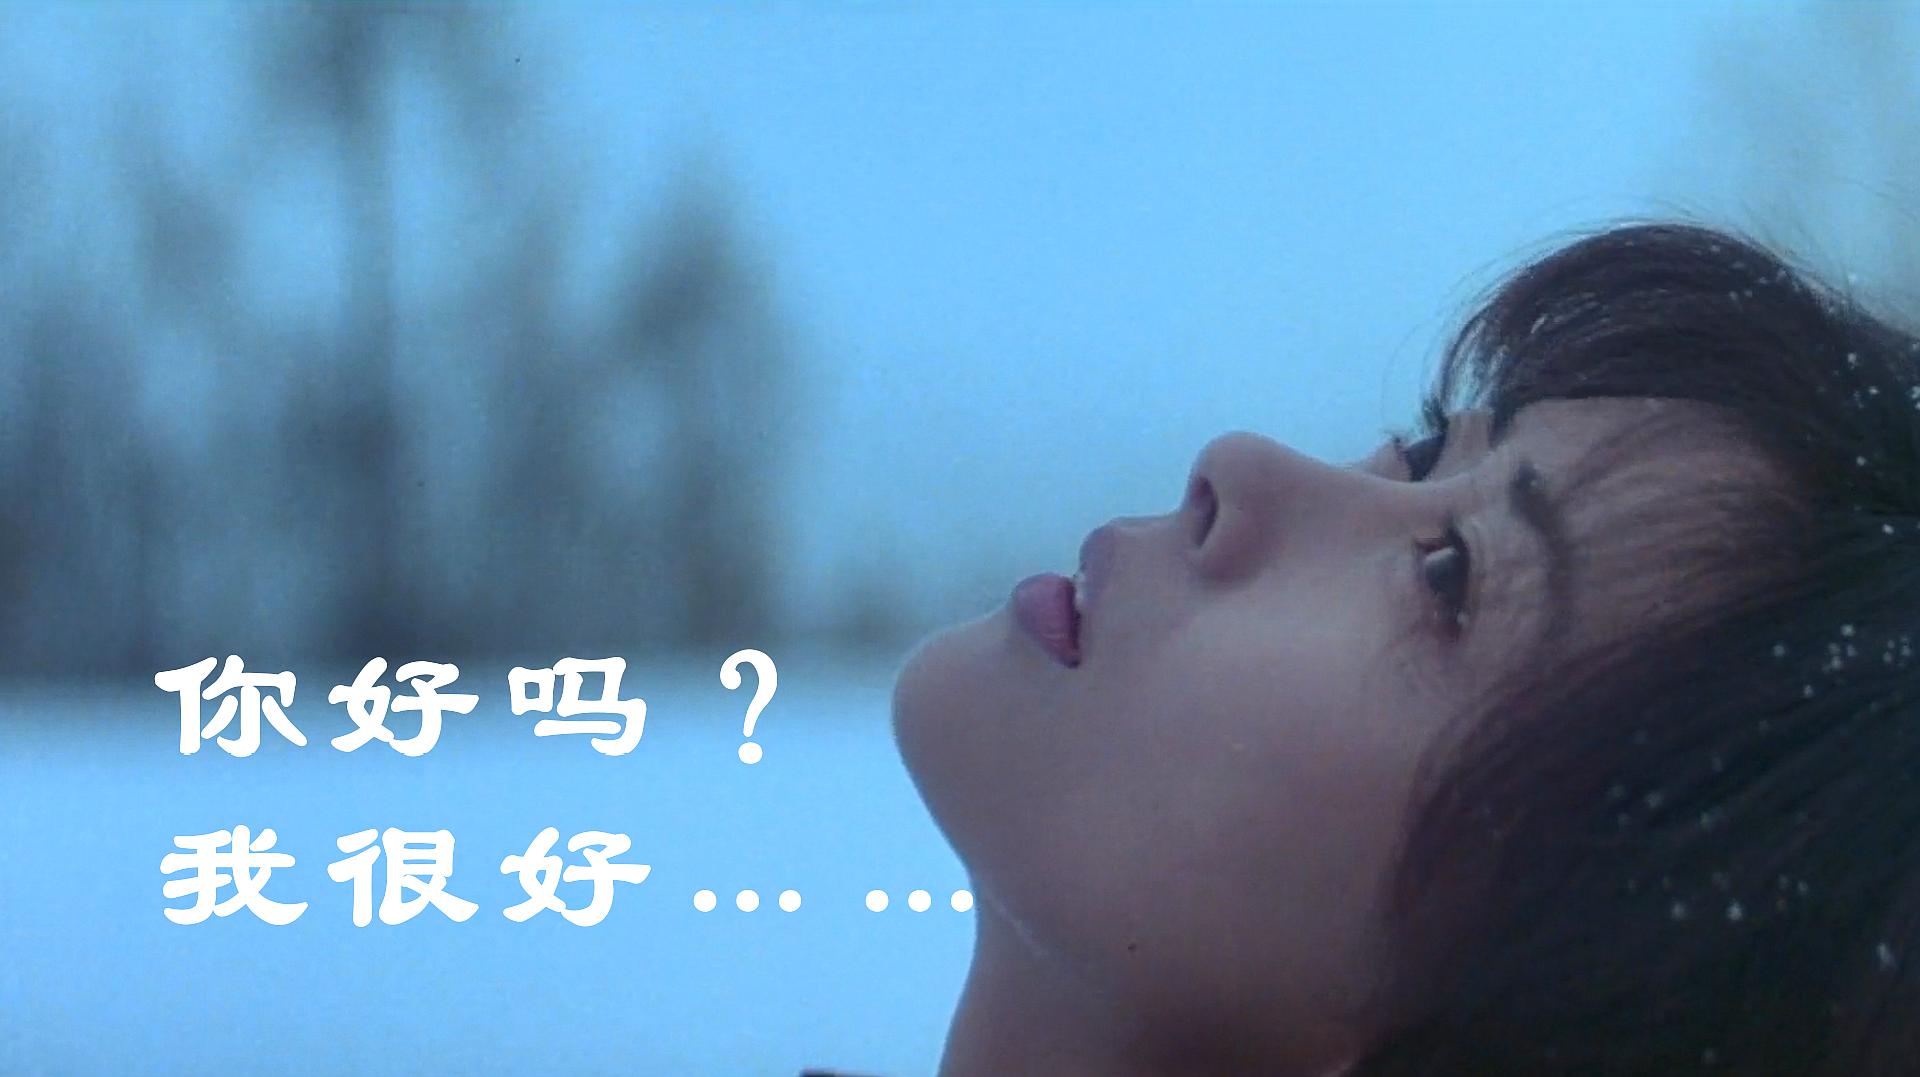 豆瓣8.9,后悔没有早几年看掉,评分最高的日本爱情电影《情书》